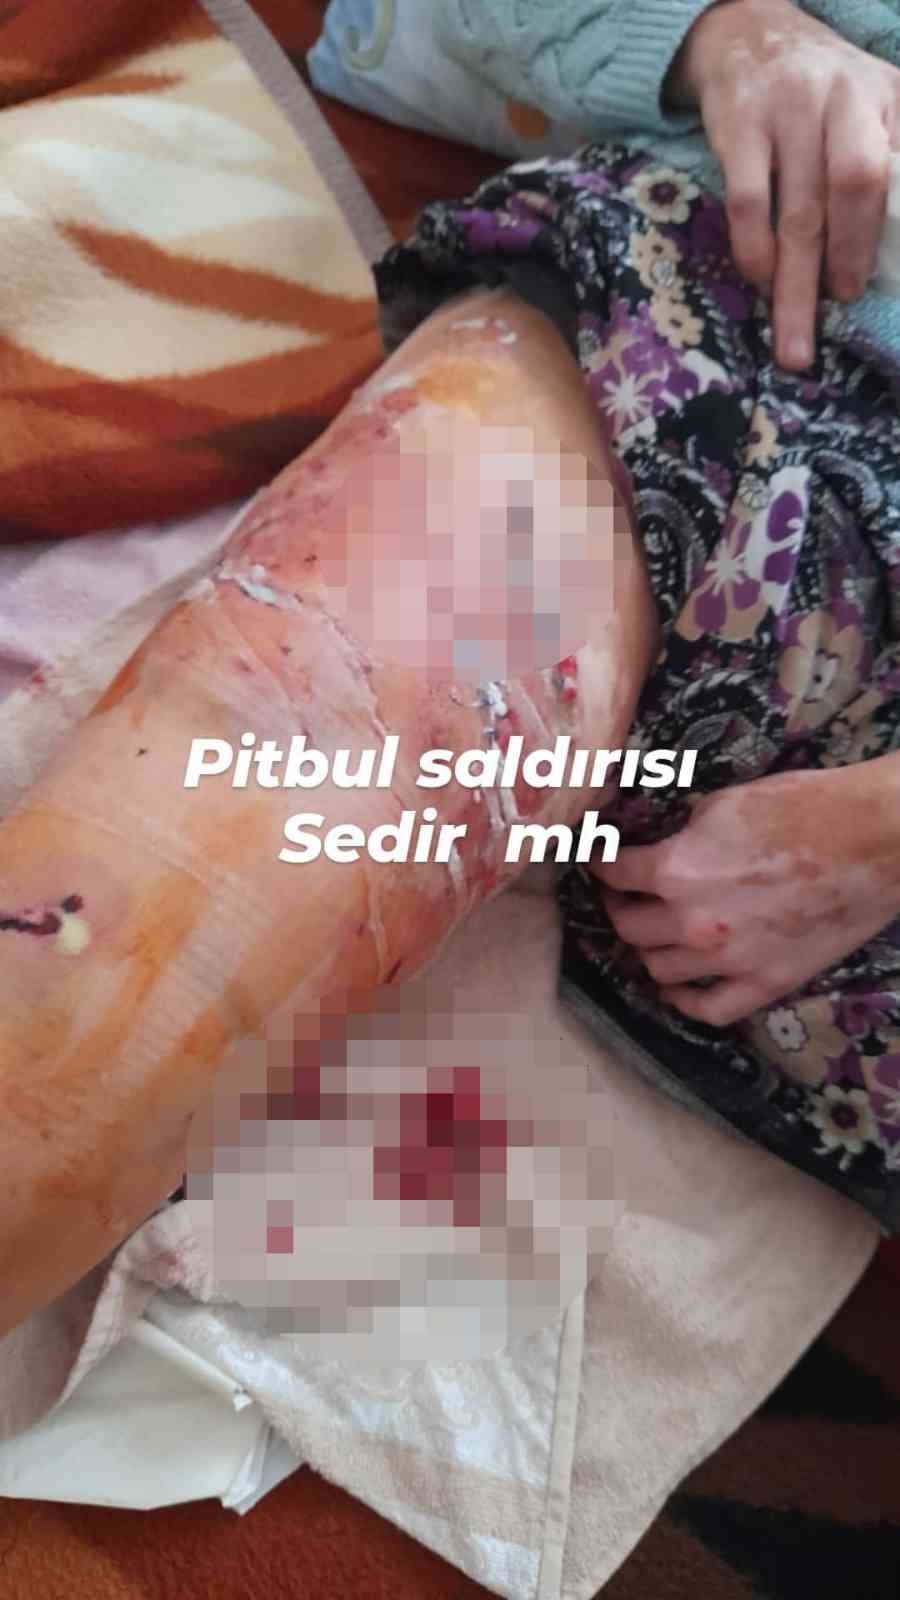 Antalya’da 2 Pitbullun Saldırısına Uğrayarak Ölümden Dönen Kadın: “gitti Geldi Tekrar Isırdı”